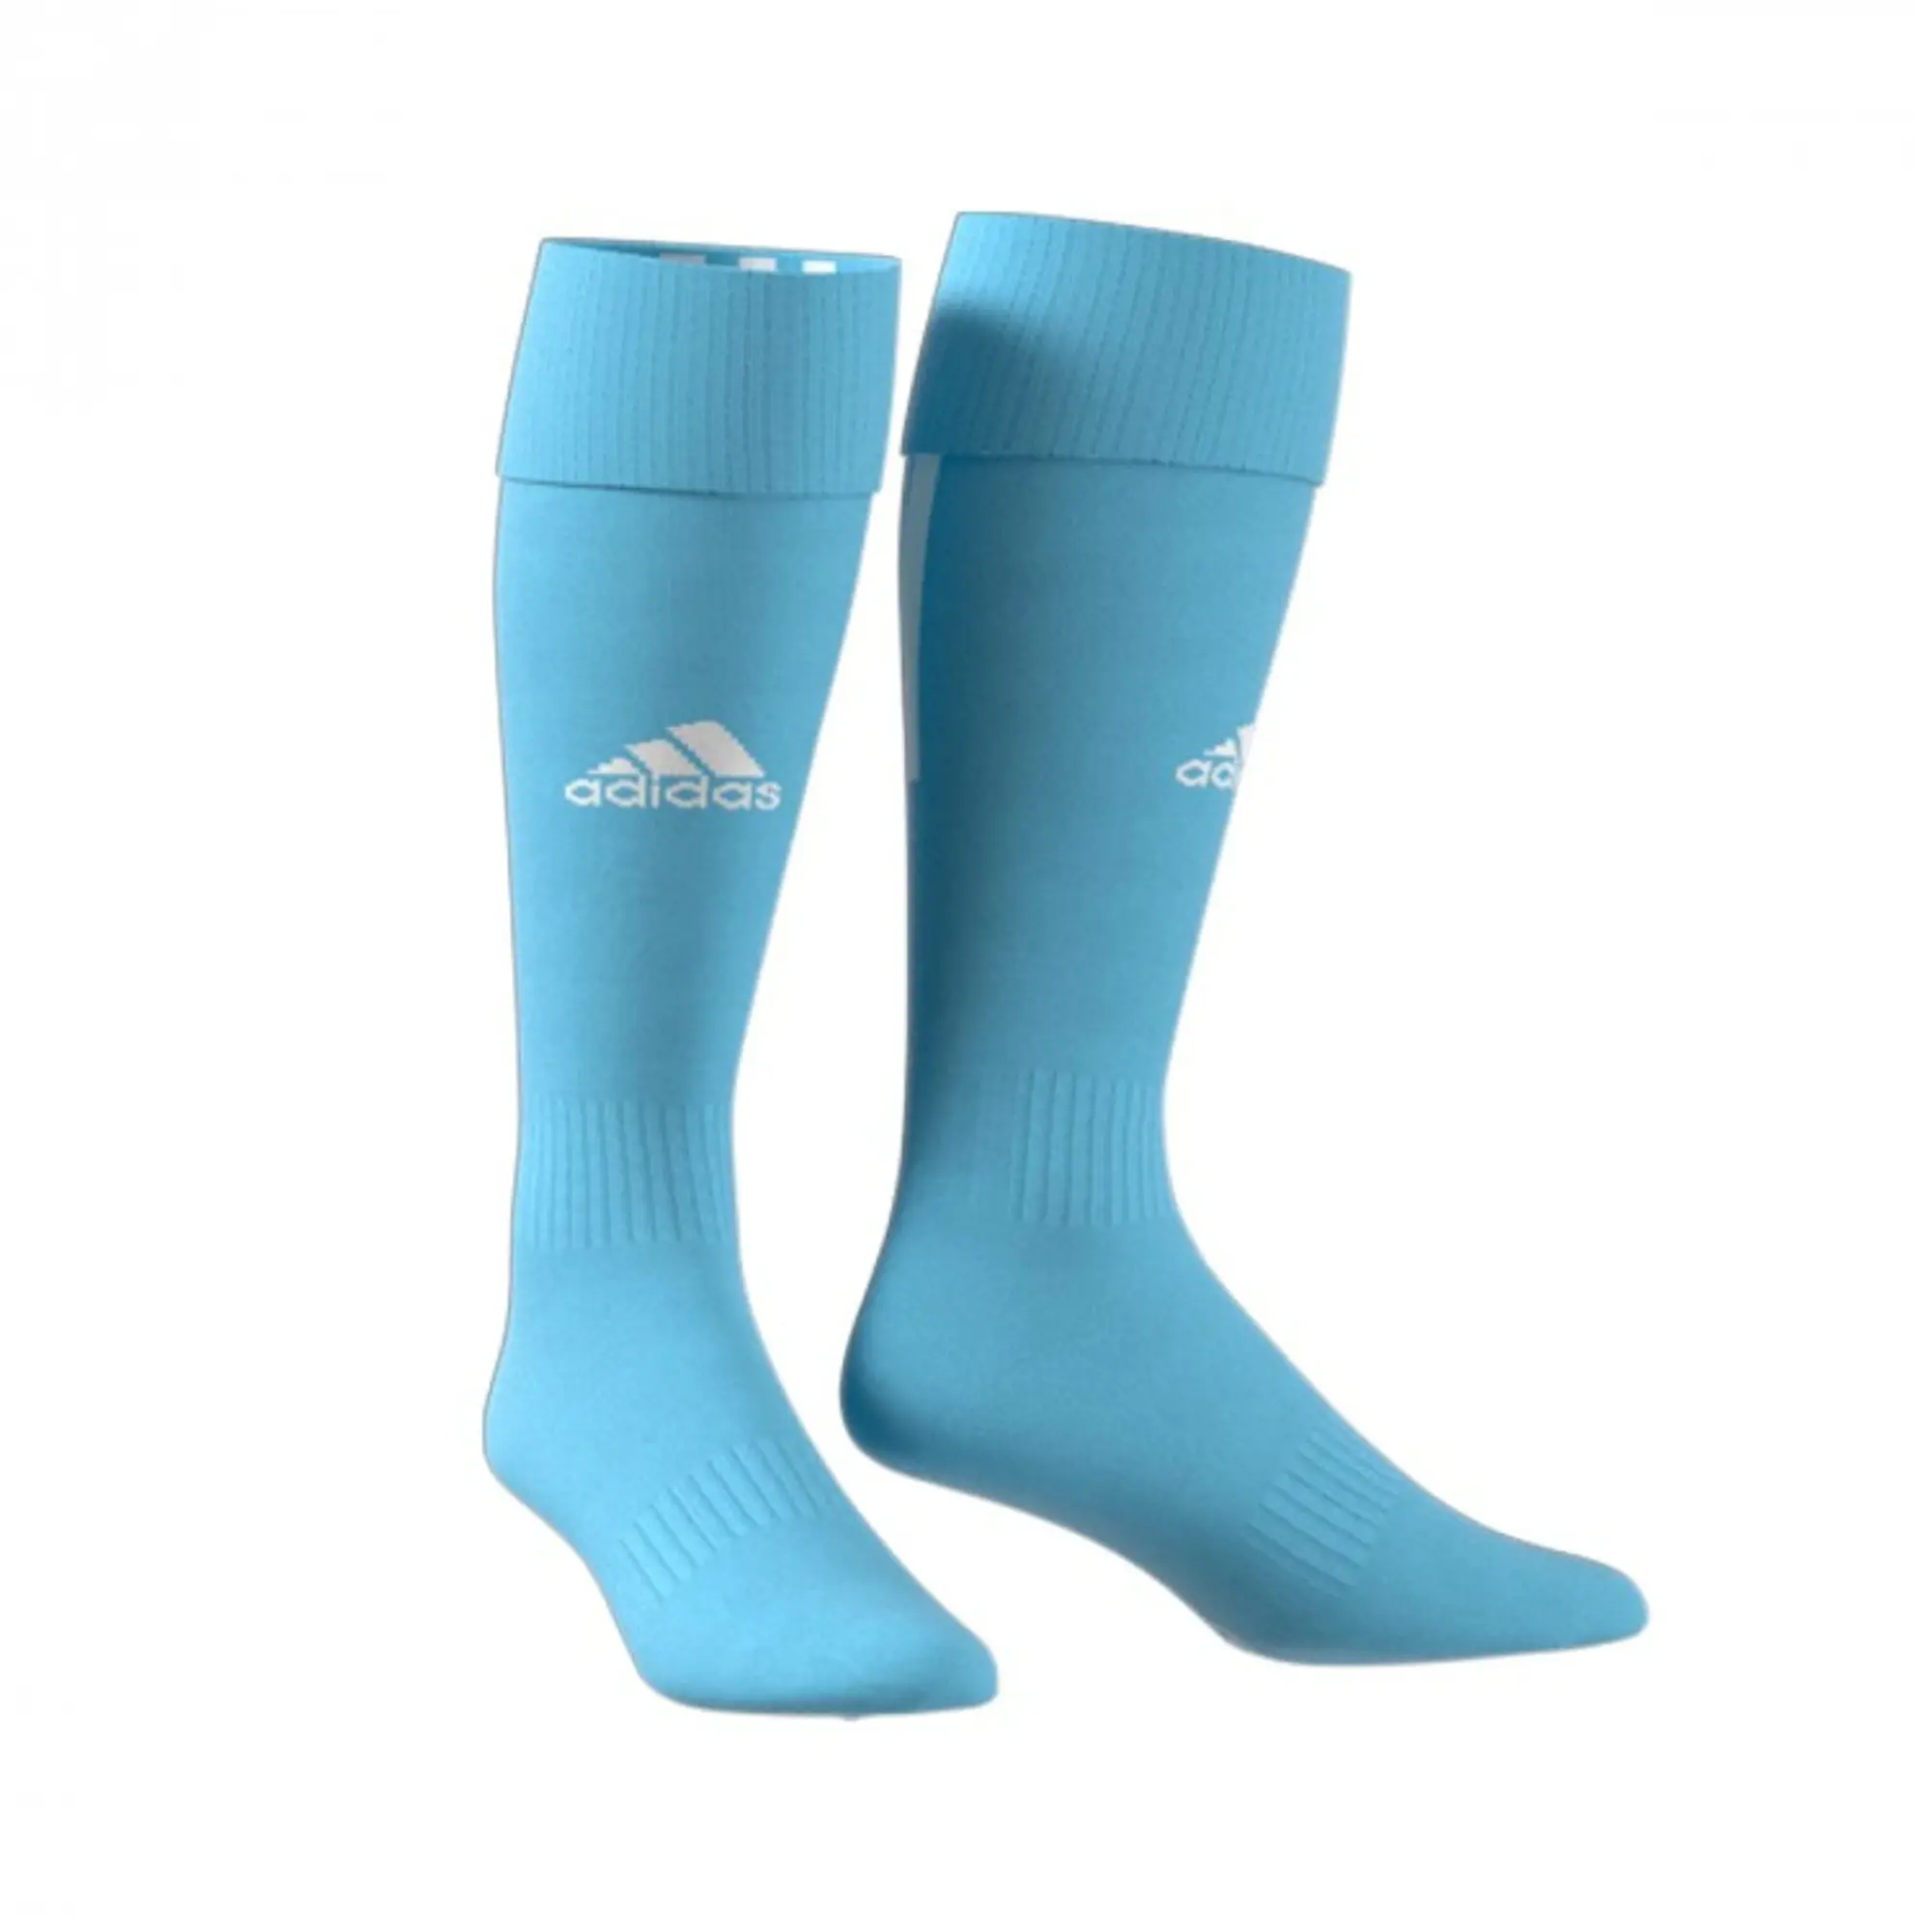 adidas Santos Football Socks - Blue